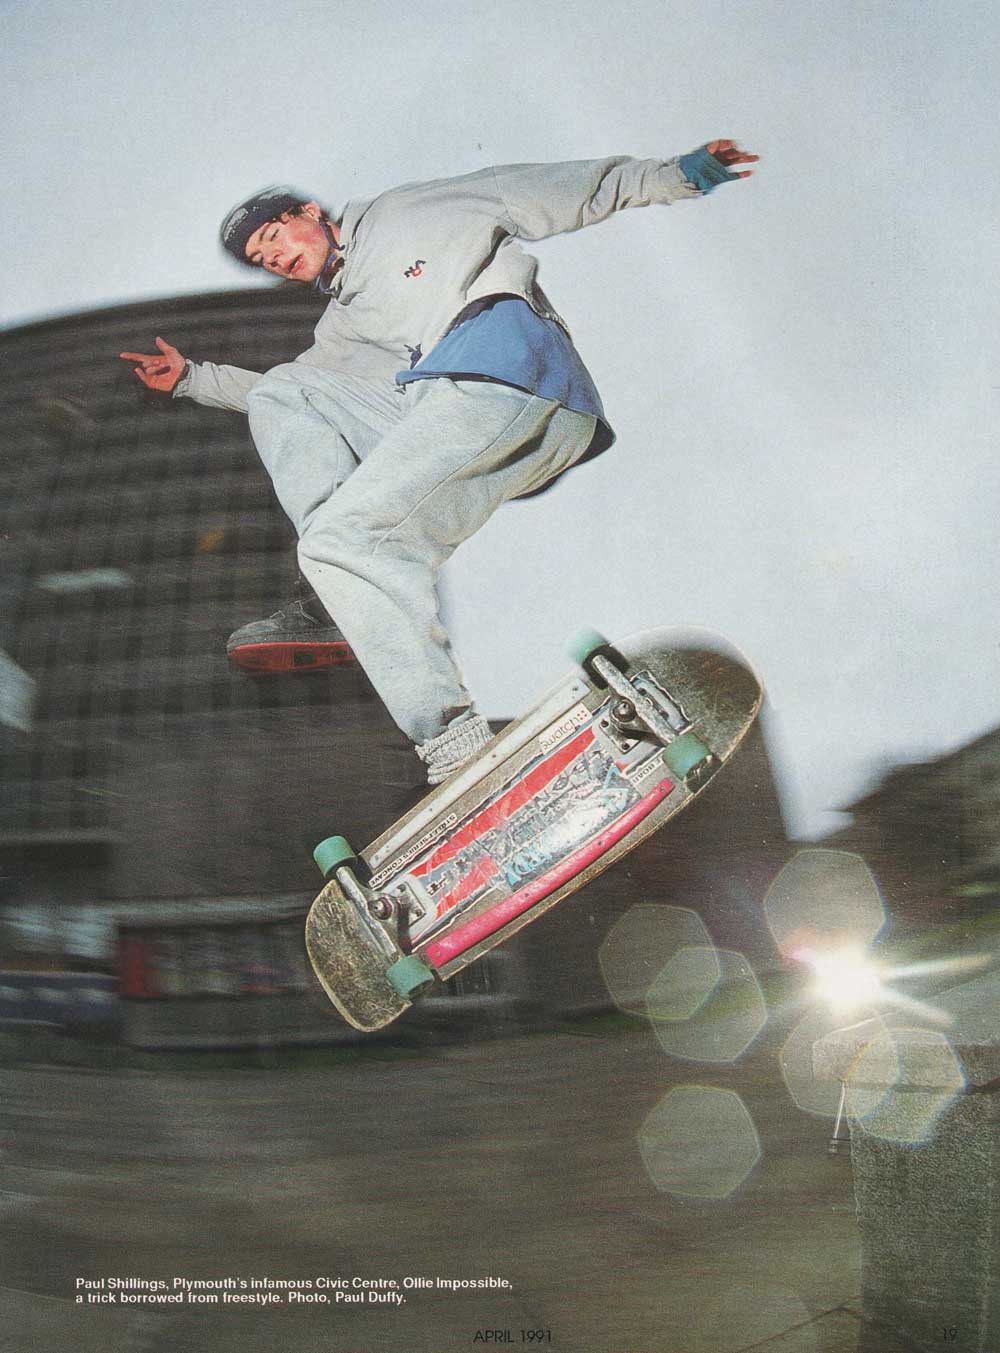 SkateboardAprilPaulShillings1991fi